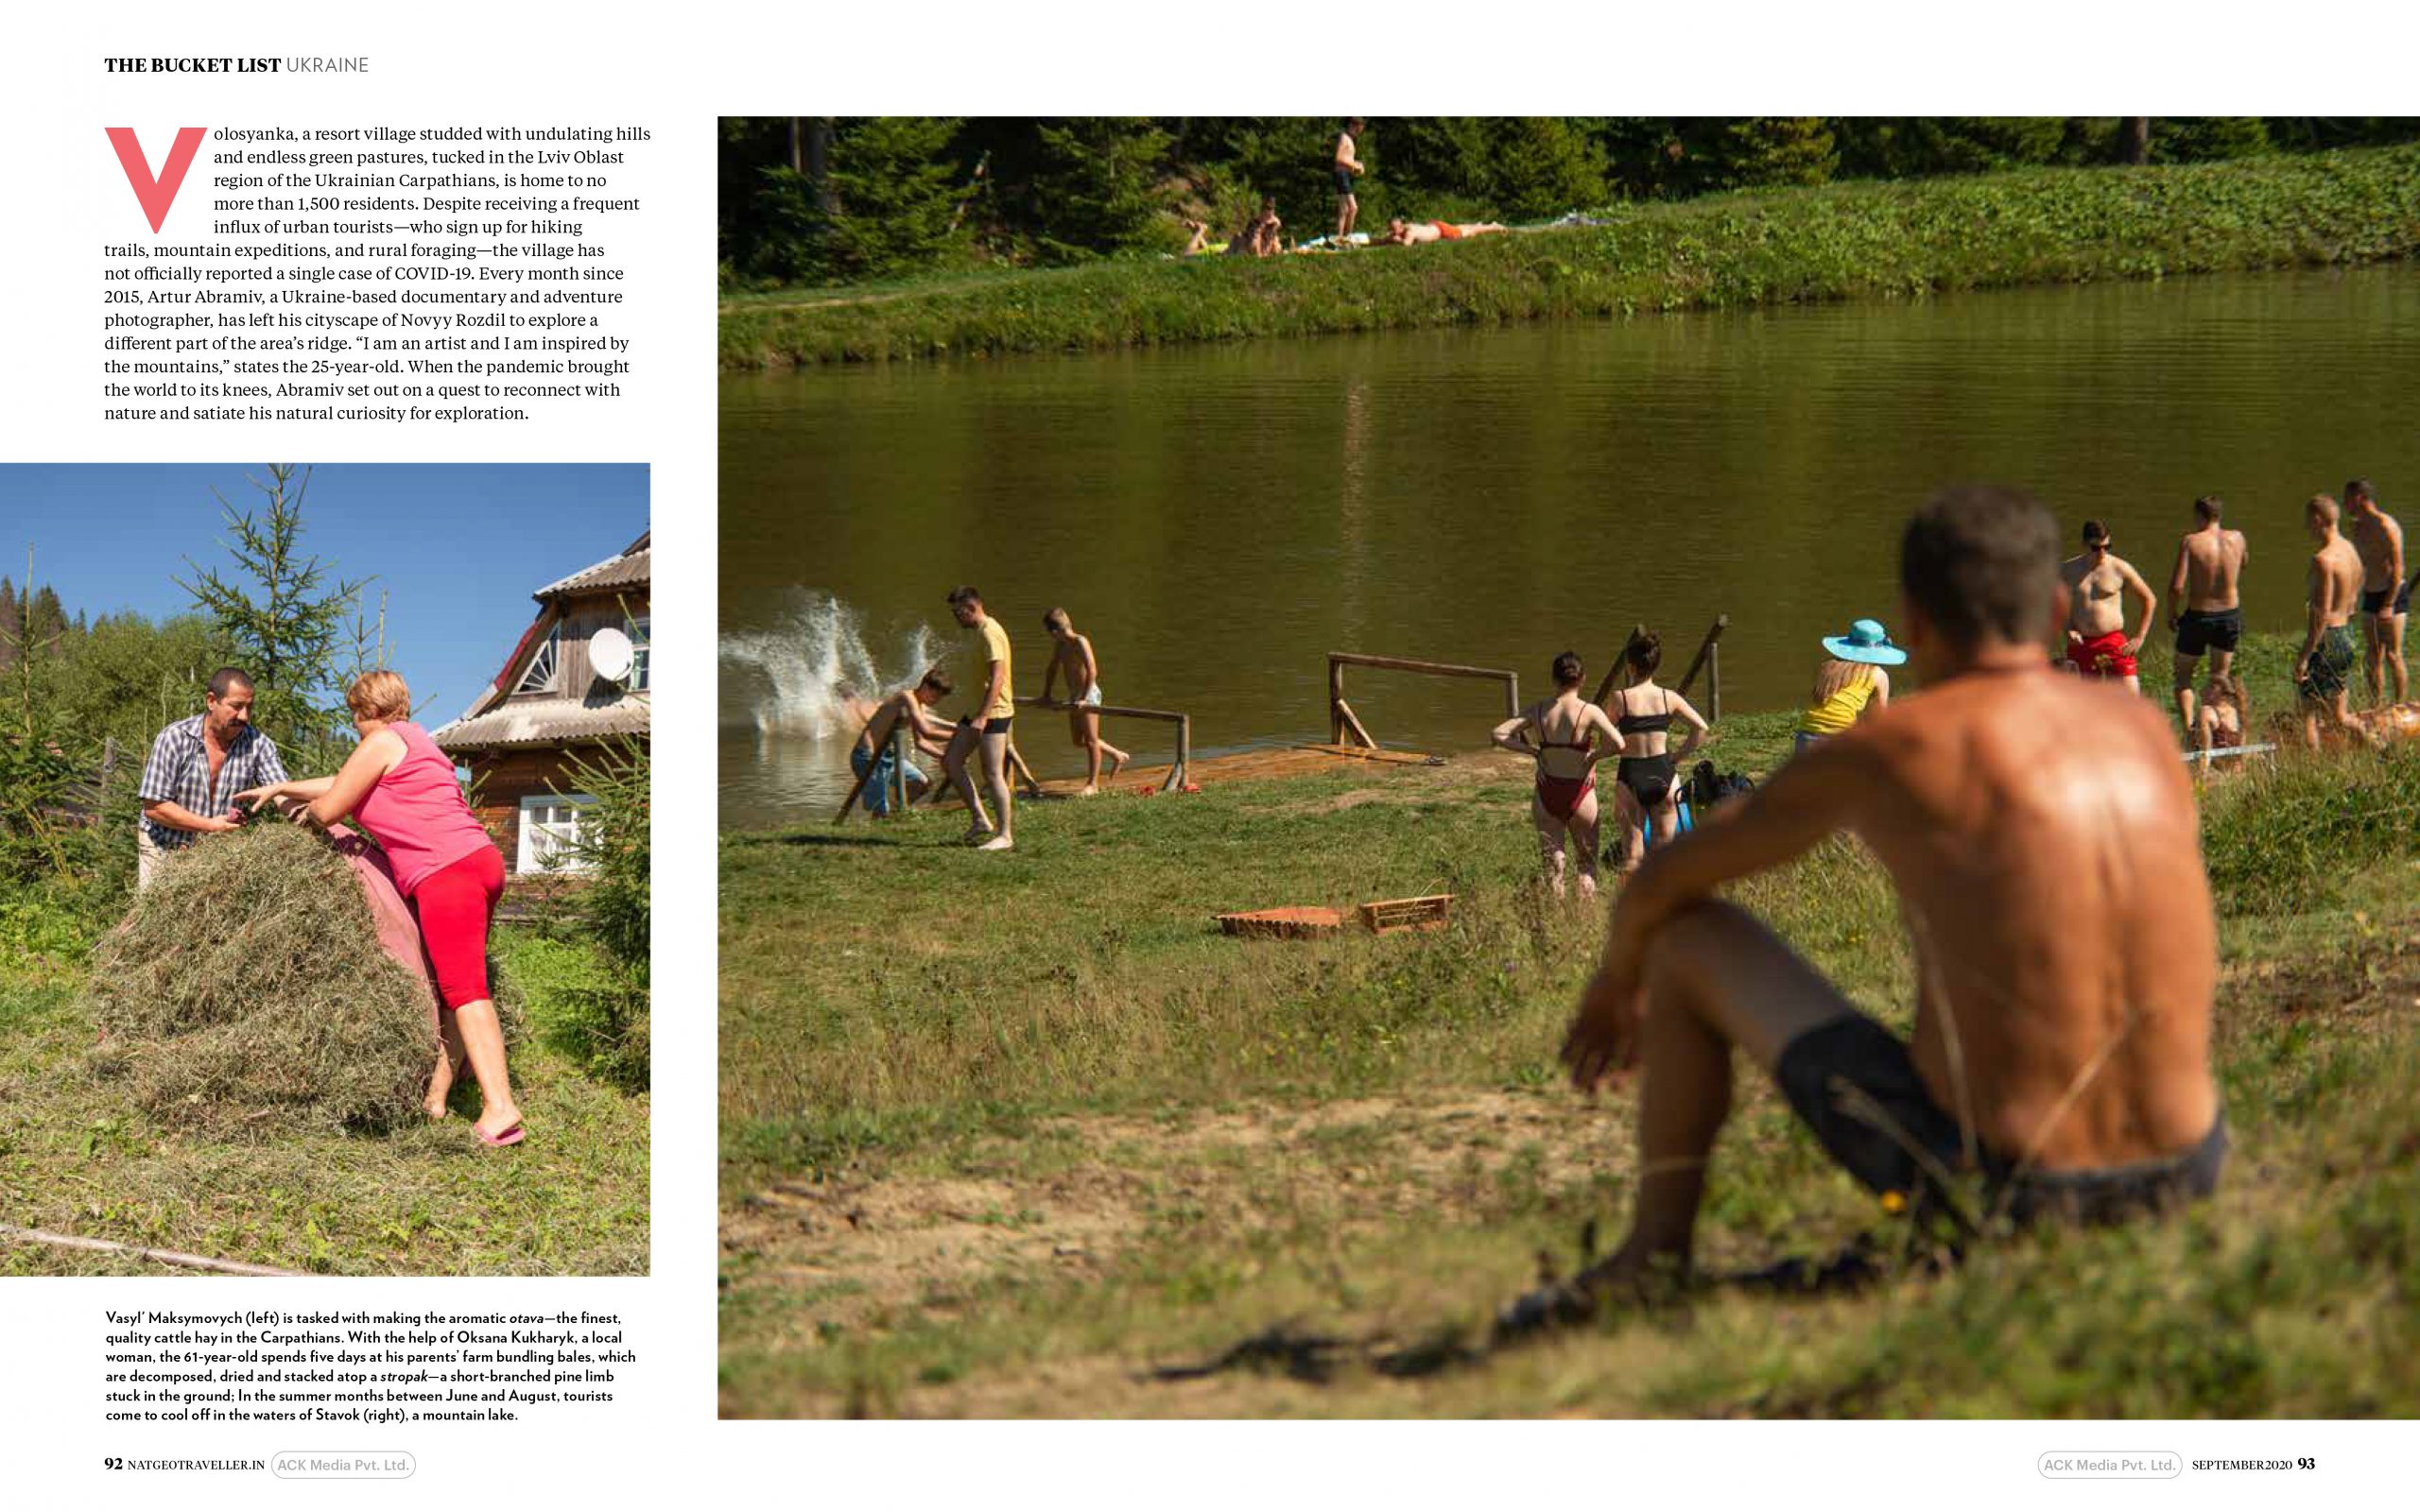 Карпаты во время пандемии в объективе львовского фотографа попали в сентябрьский номер National Geographic